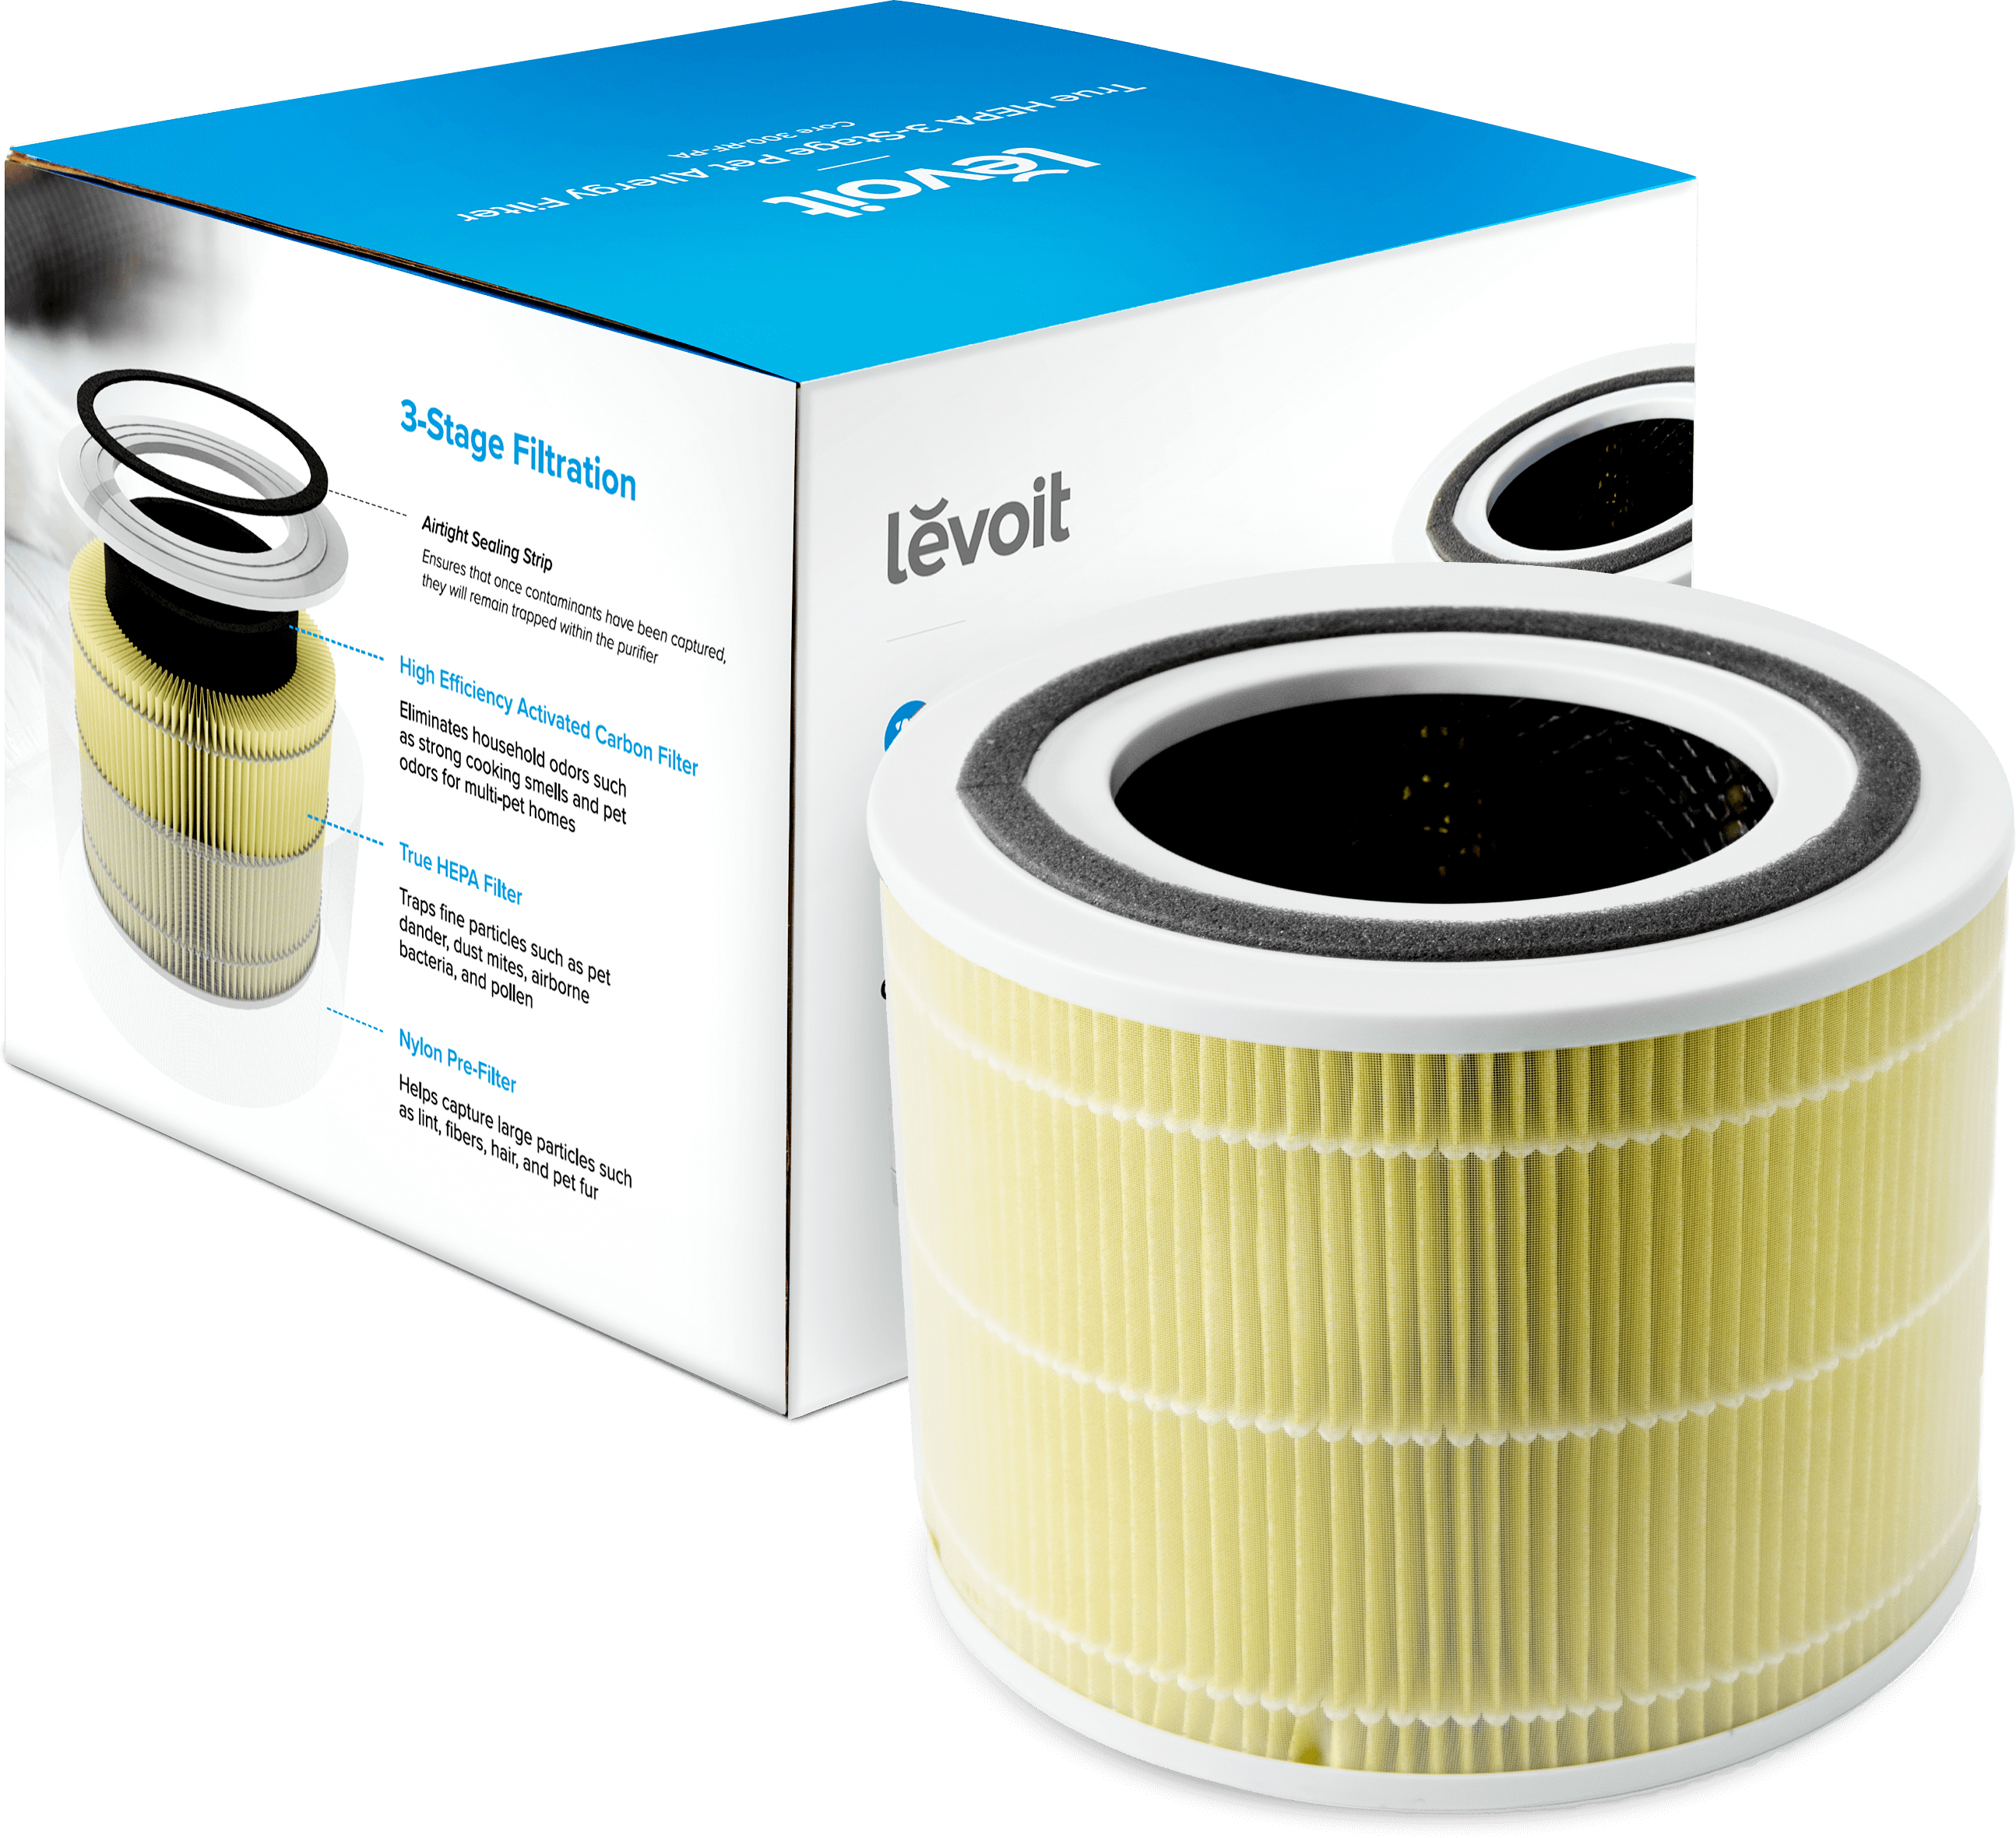 Фильтр для увлажнителя воздуха Levoit Air Cleaner Filter Core 300 True HEPA 3-Stage (Original Pet Allergy Filter)